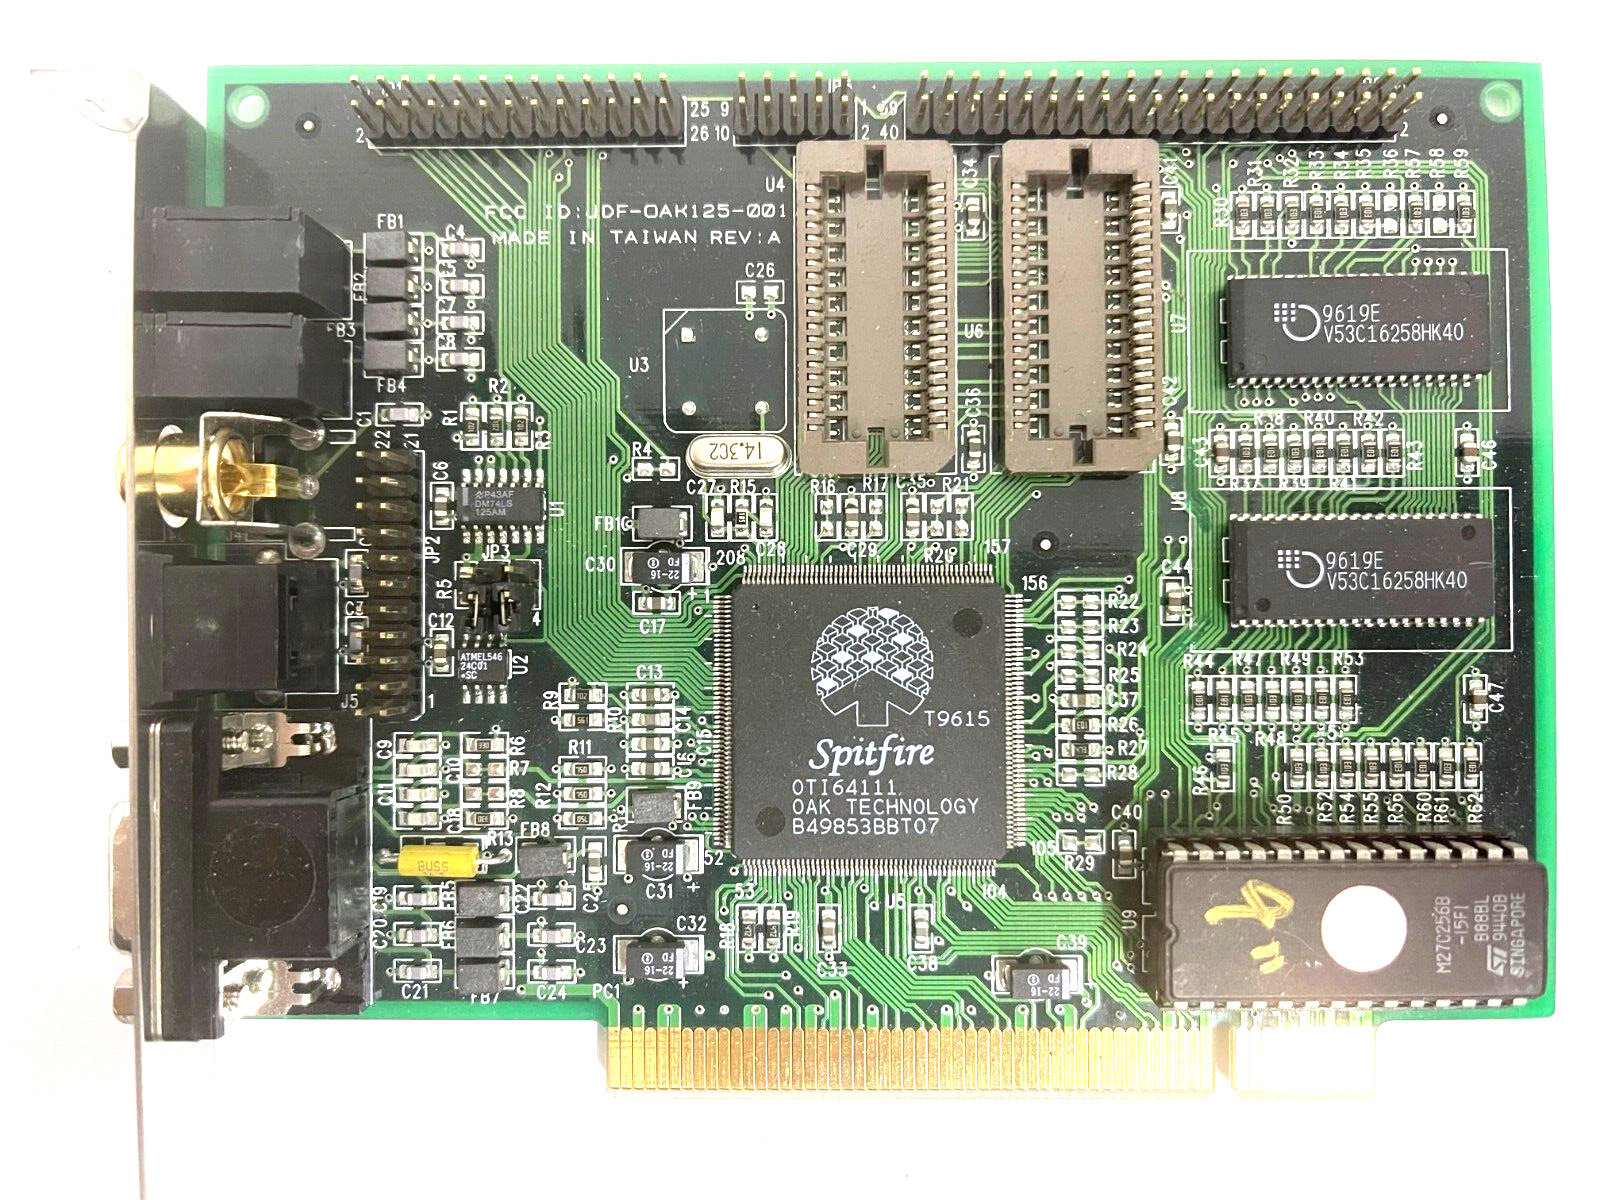 RARE VINTAGE OAK SPITFIRE OTI64111 2 MEG PCI VGA CARD VGA RCA SVID PORTS MXB118